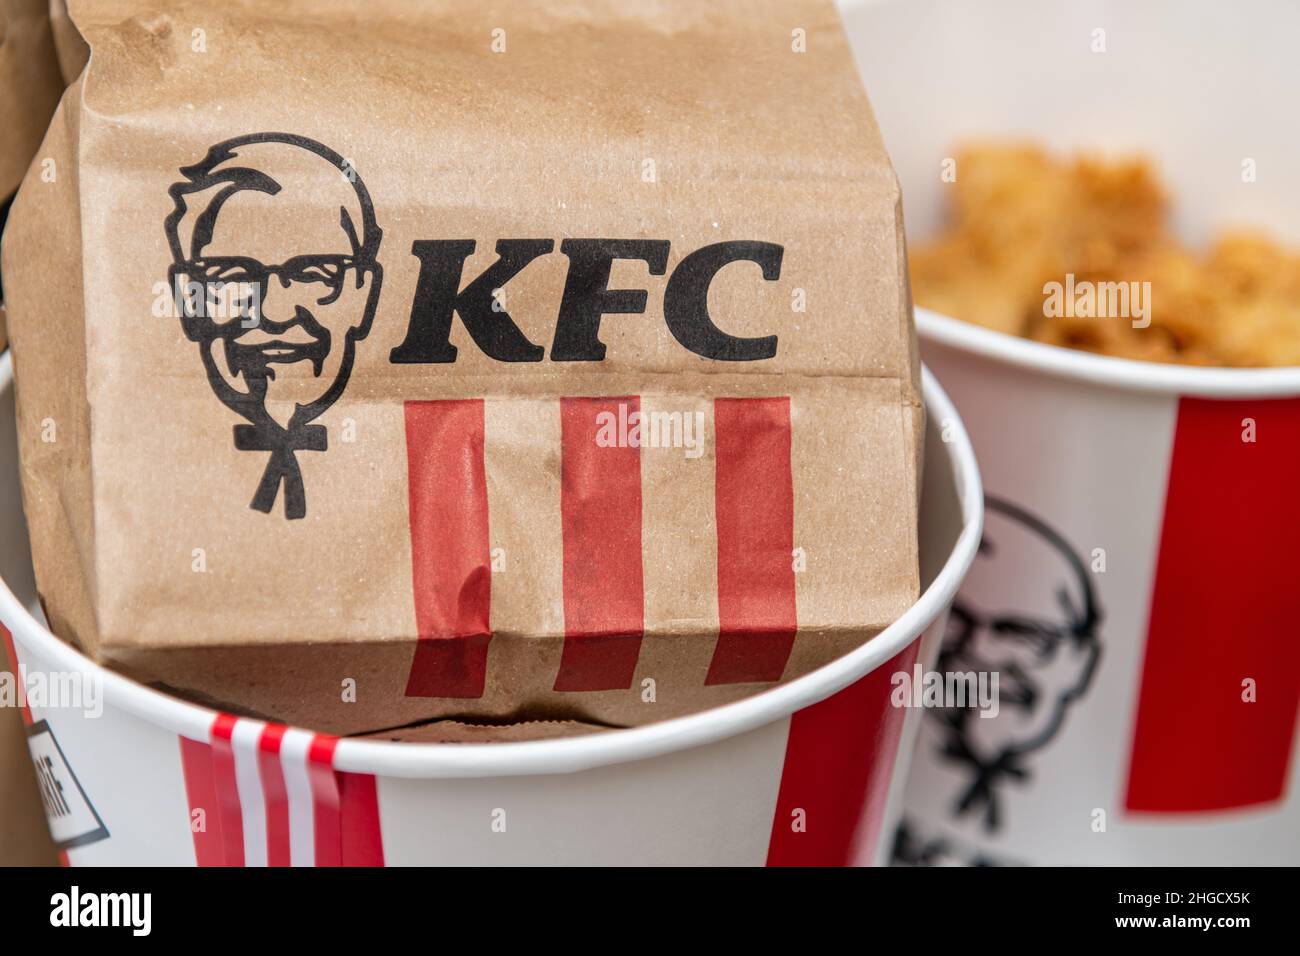 Antalya, Türkei - 20. Januar 2022: Eine Menge KFC Chicken Hot Strips oder Nuggets im Eimer mit KFC ( Kentucky Fried Chicken ) Fast Food. Stockfoto